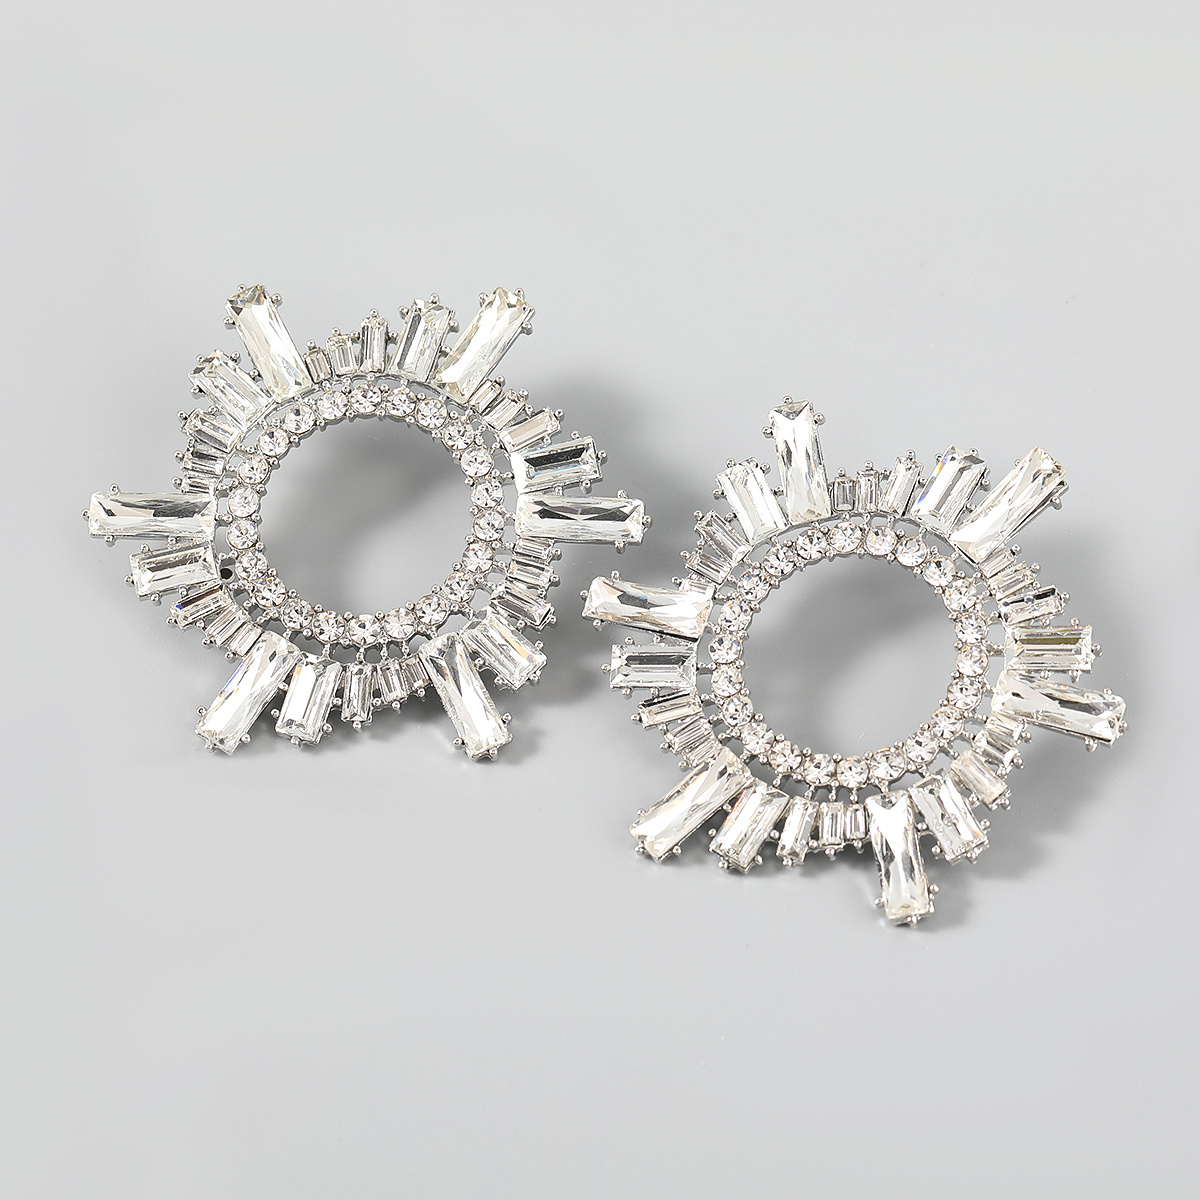 New Trend Rhinestone Flower Dangling Earrings for Women Dinner Wedding Accessories Fashion Statement earring Luxury Jewelry